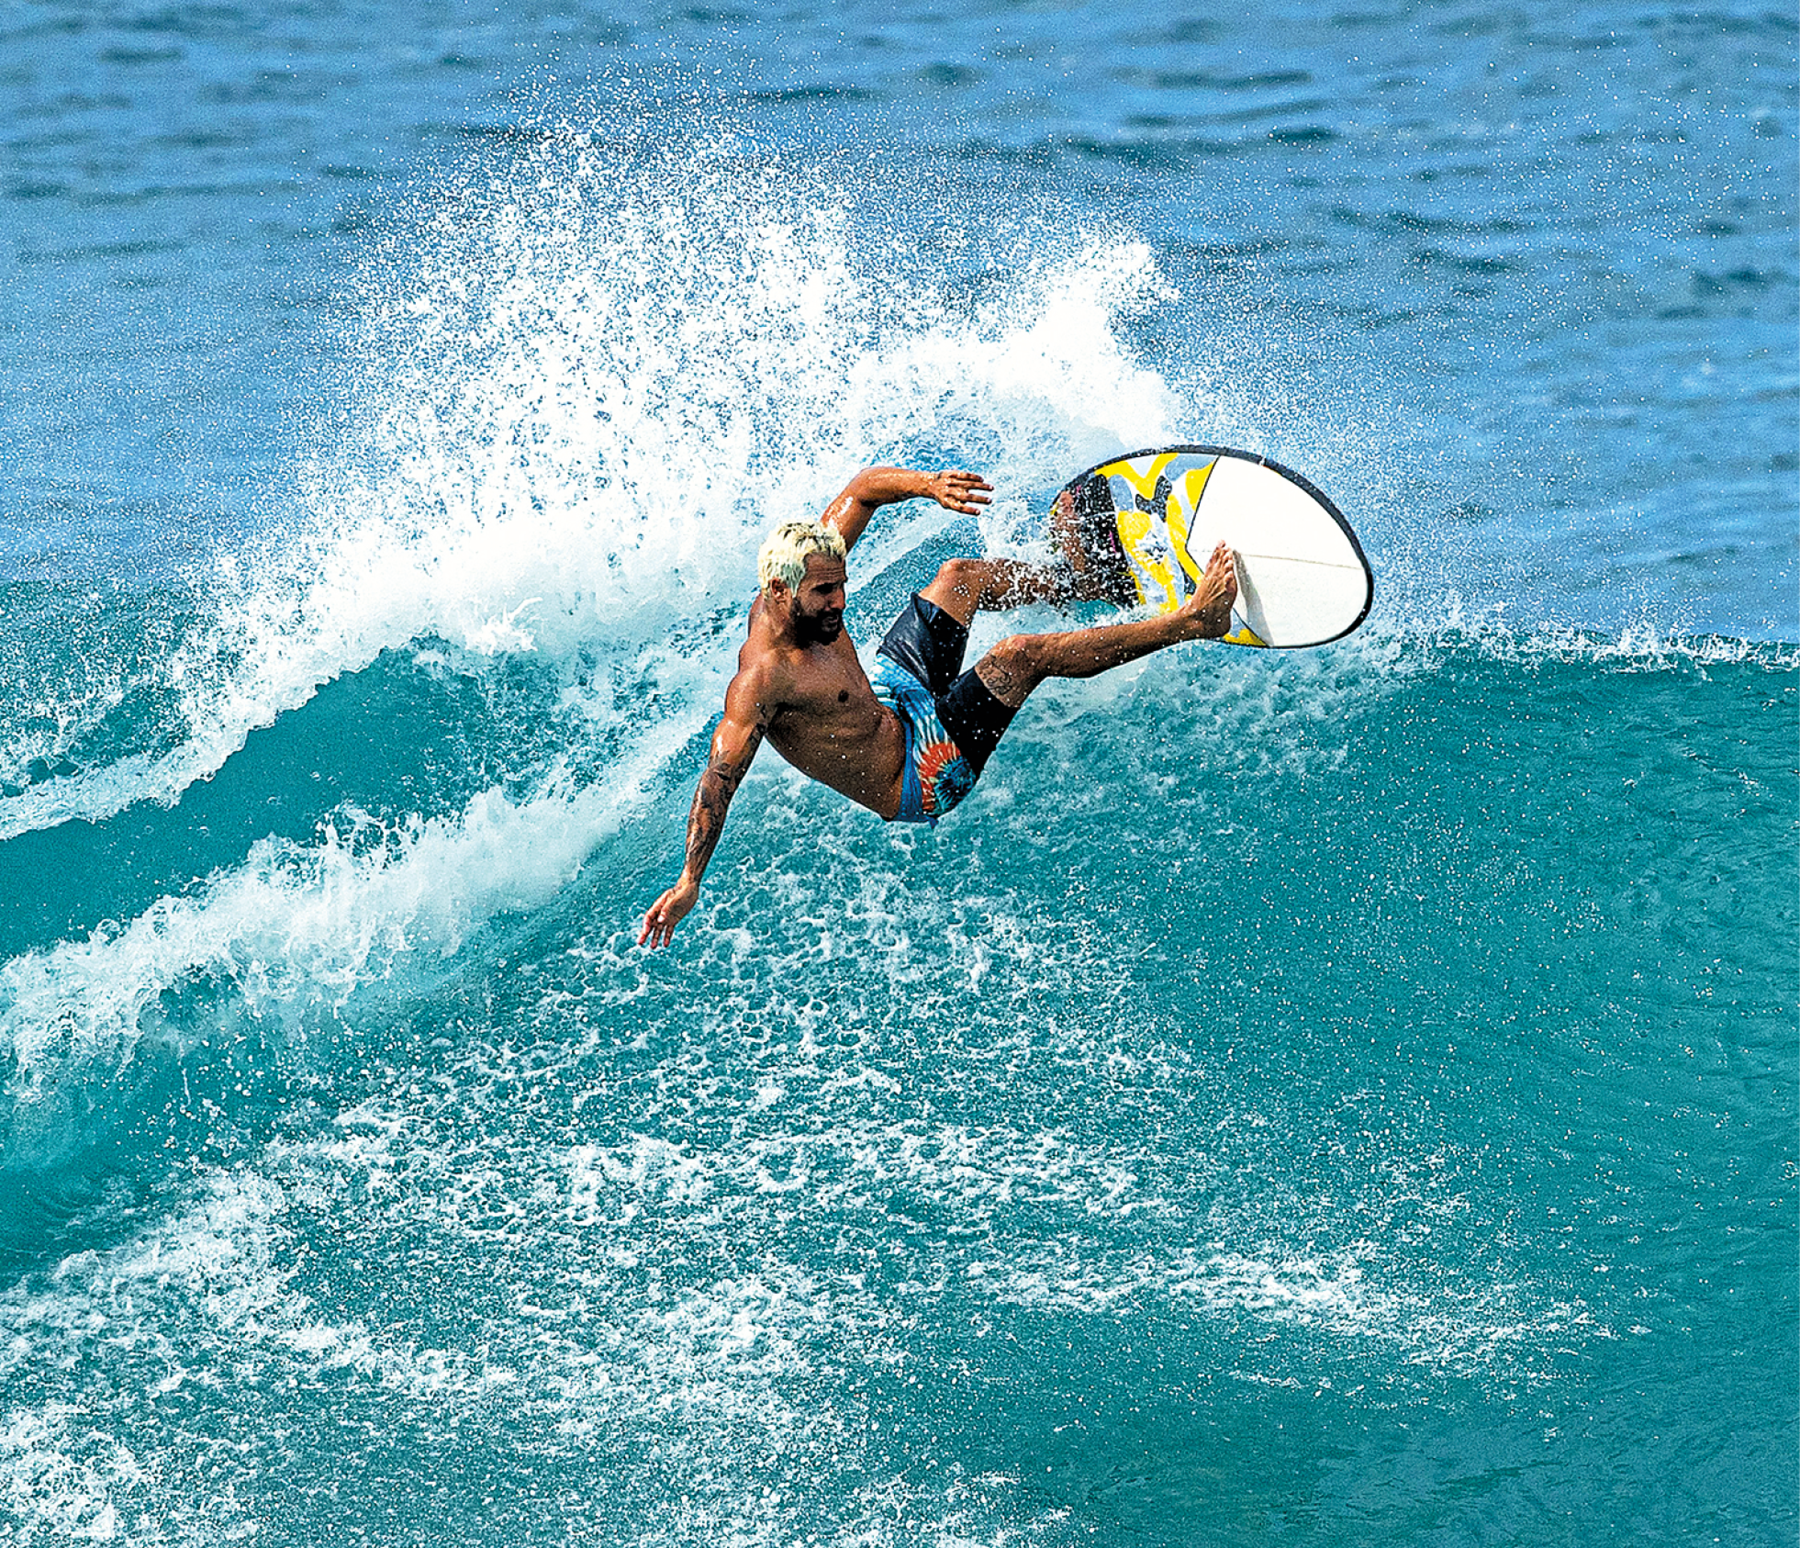 Fotografia. Vista do alto de um homem de bermuda sobre uma prancha de surfe, fazendo uma manobra sobre uma onda no mar.